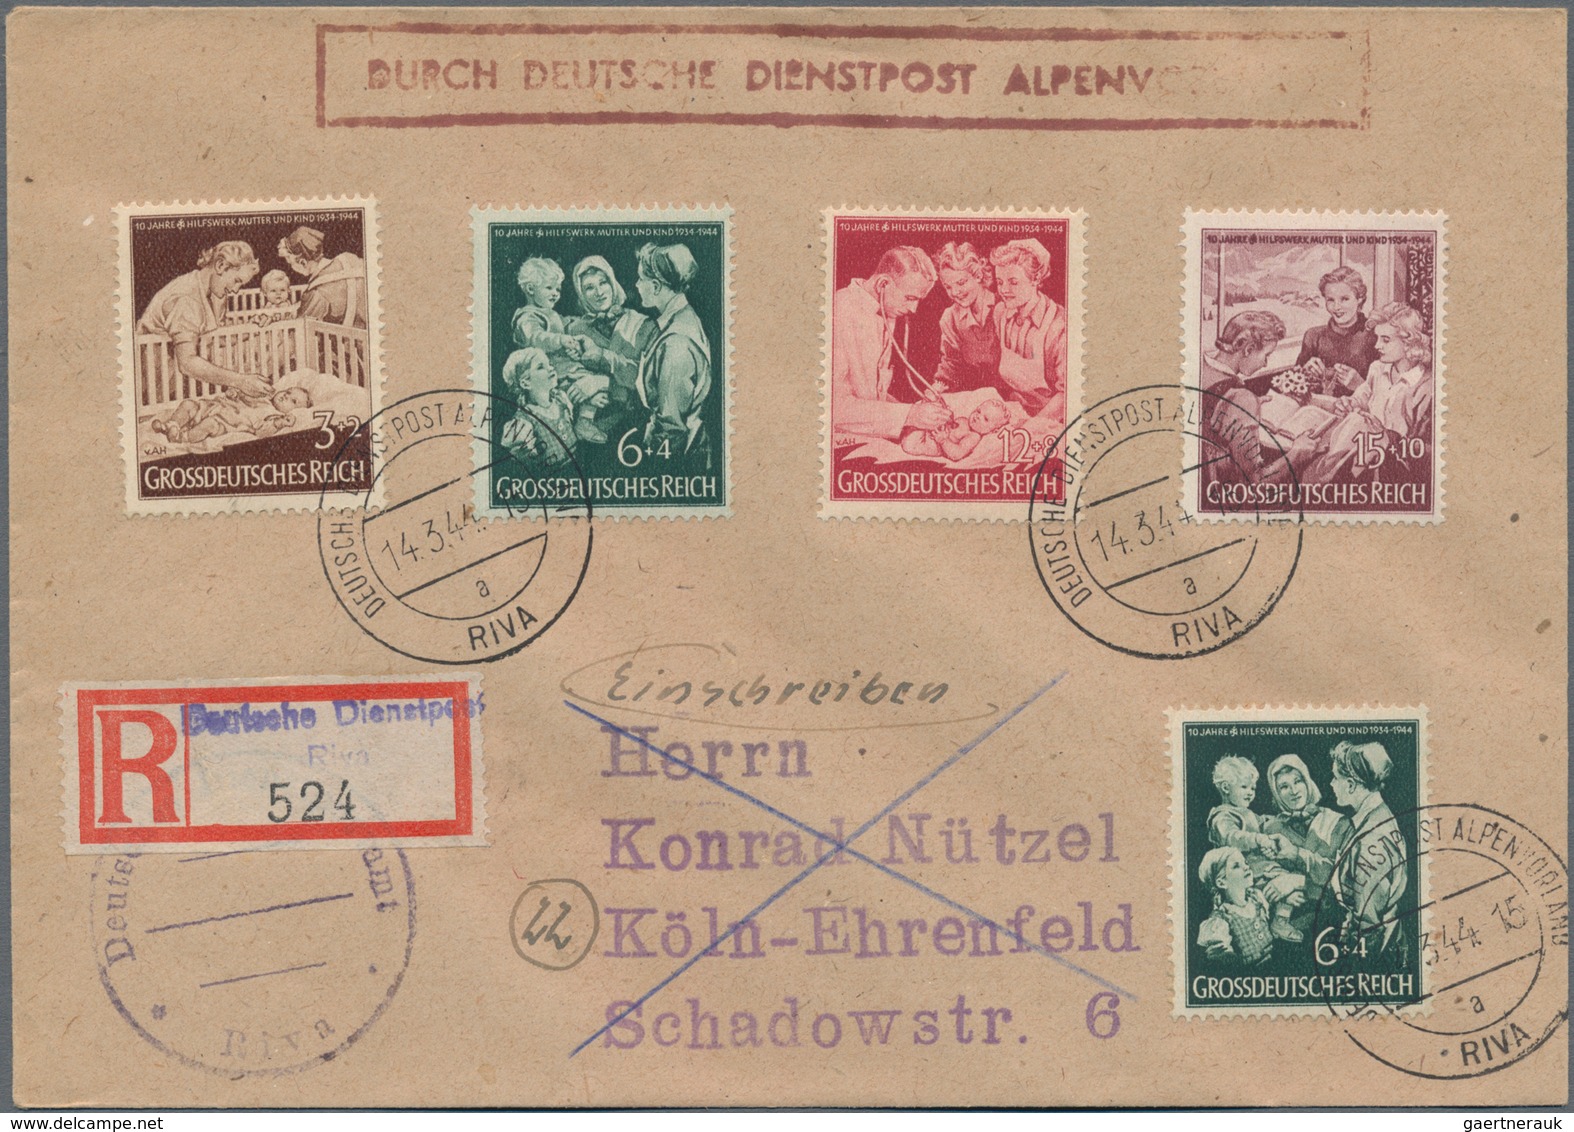 Deutsches Reich - 3. Reich: 1933-1945, ca. 350 Briefe, Karten, Paketkarten, Ganzsachen und Postkarte